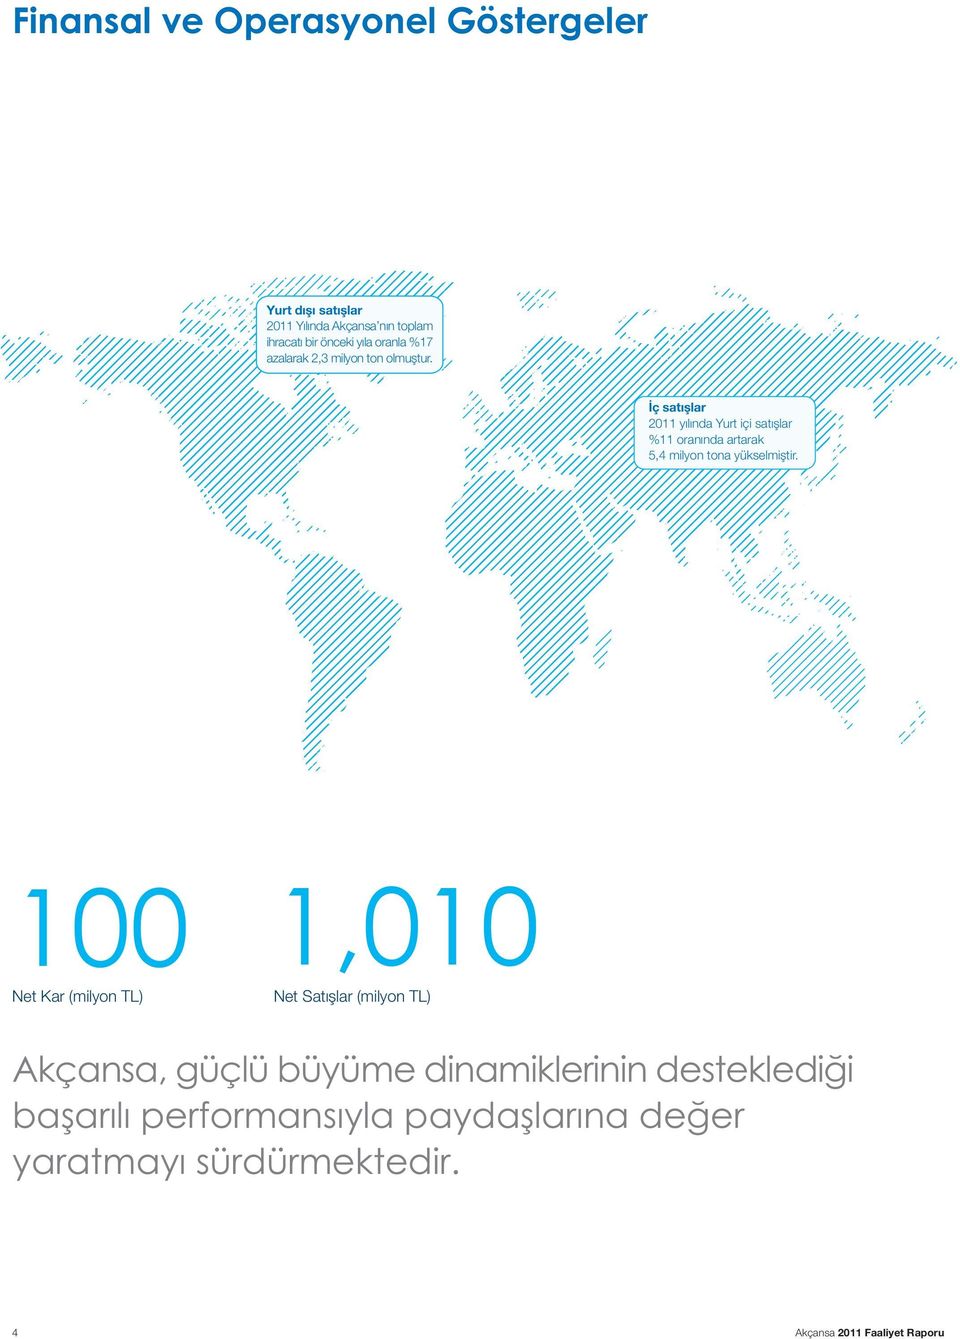 Ýç satýþlar 2011 yýlýnda Yurt içi satýþlar %11 oranýnda artarak 5,4 milyon tona yükselmiþtir.